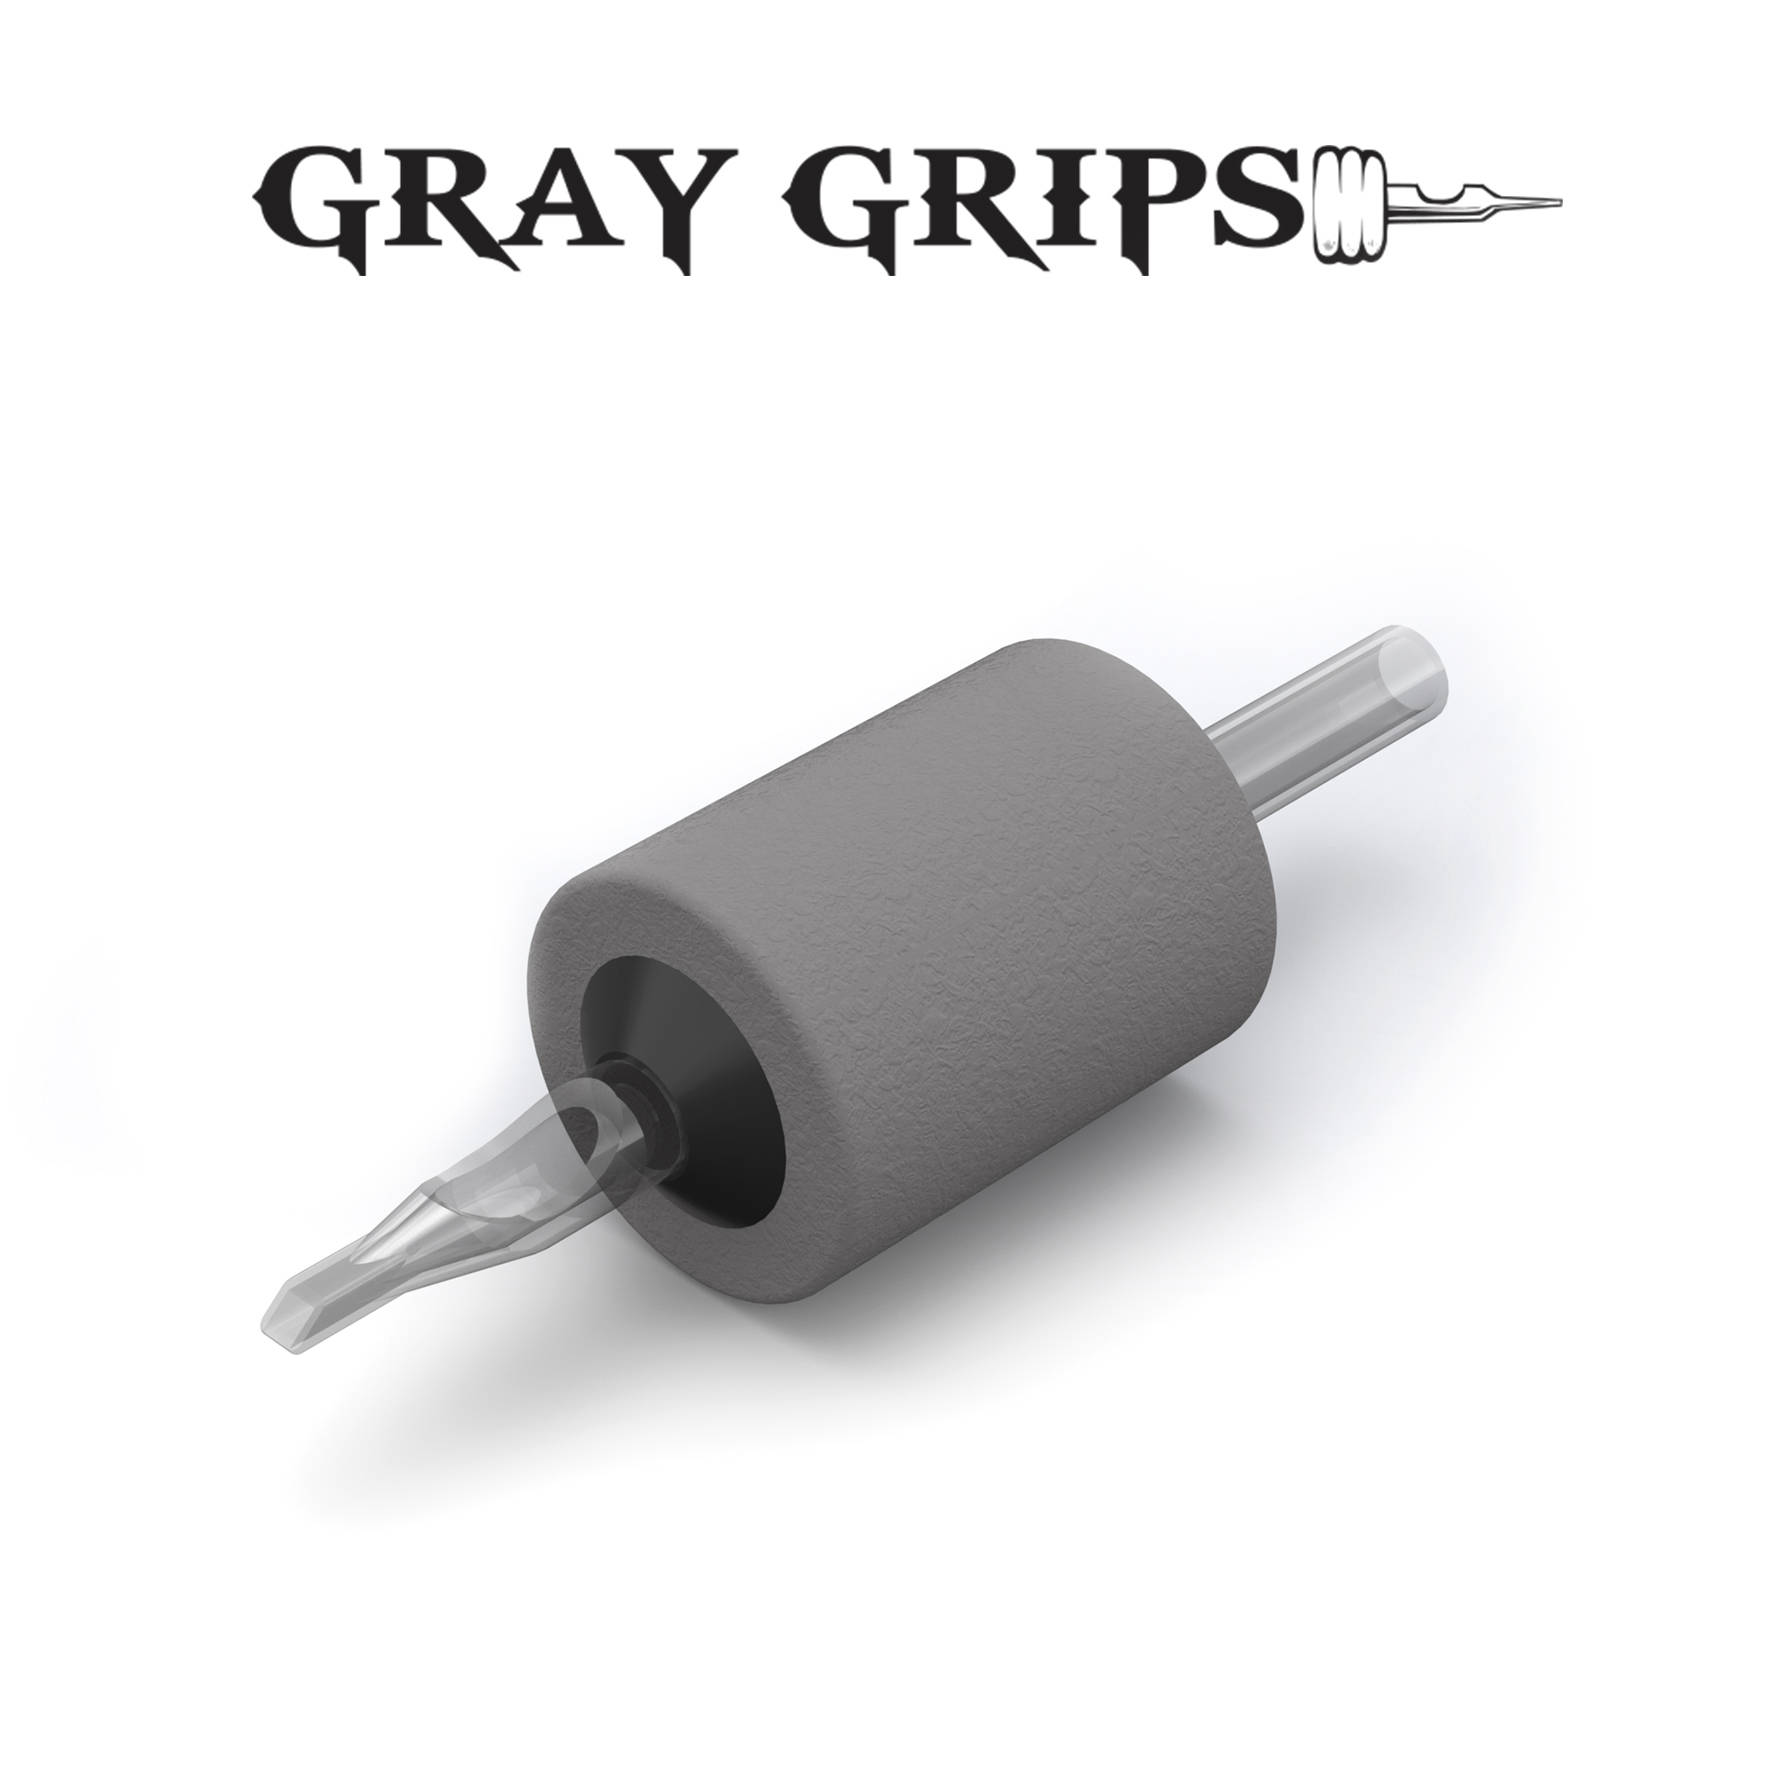 Gray Grips Memory Foam™